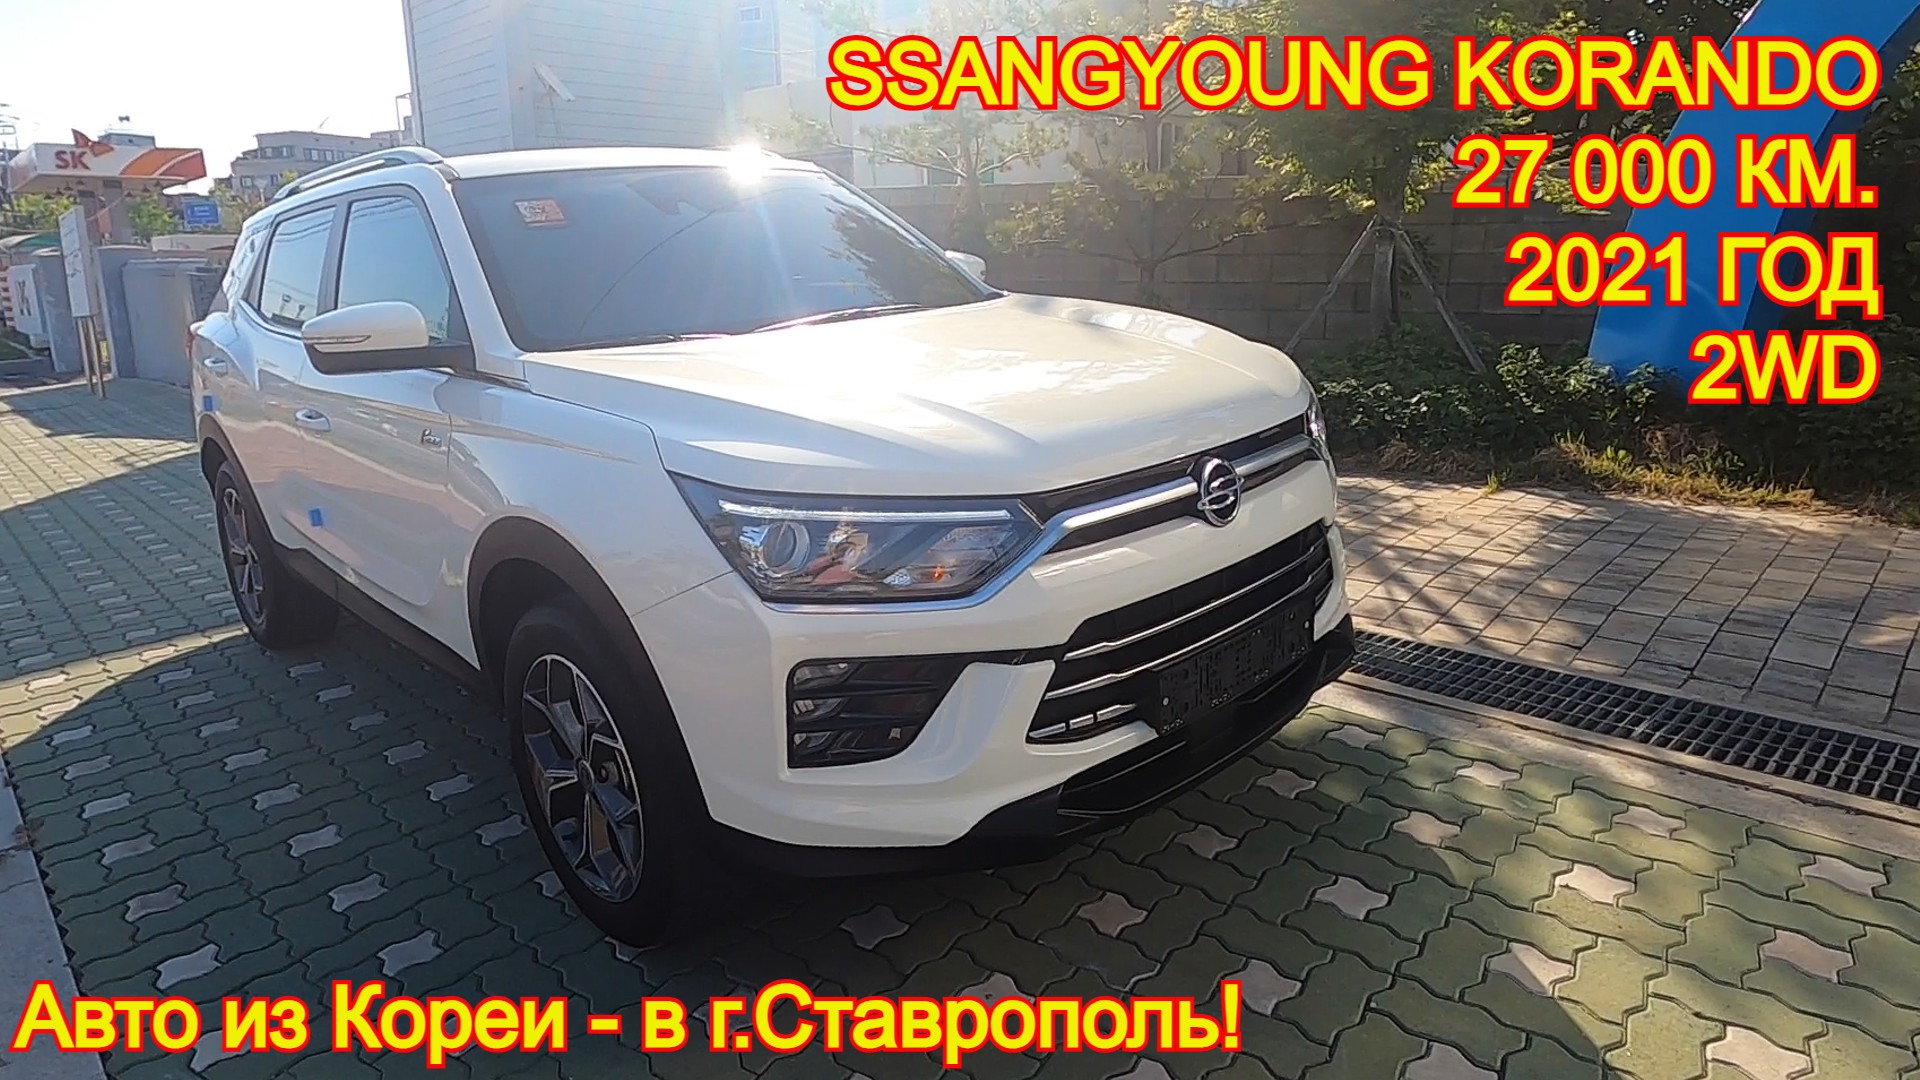 Авто из Кореи в г.Ставрополь - SsangYoung Korando, 2021/22 год, 27 000 км., 2WD, +/- 2 300 000 руб.